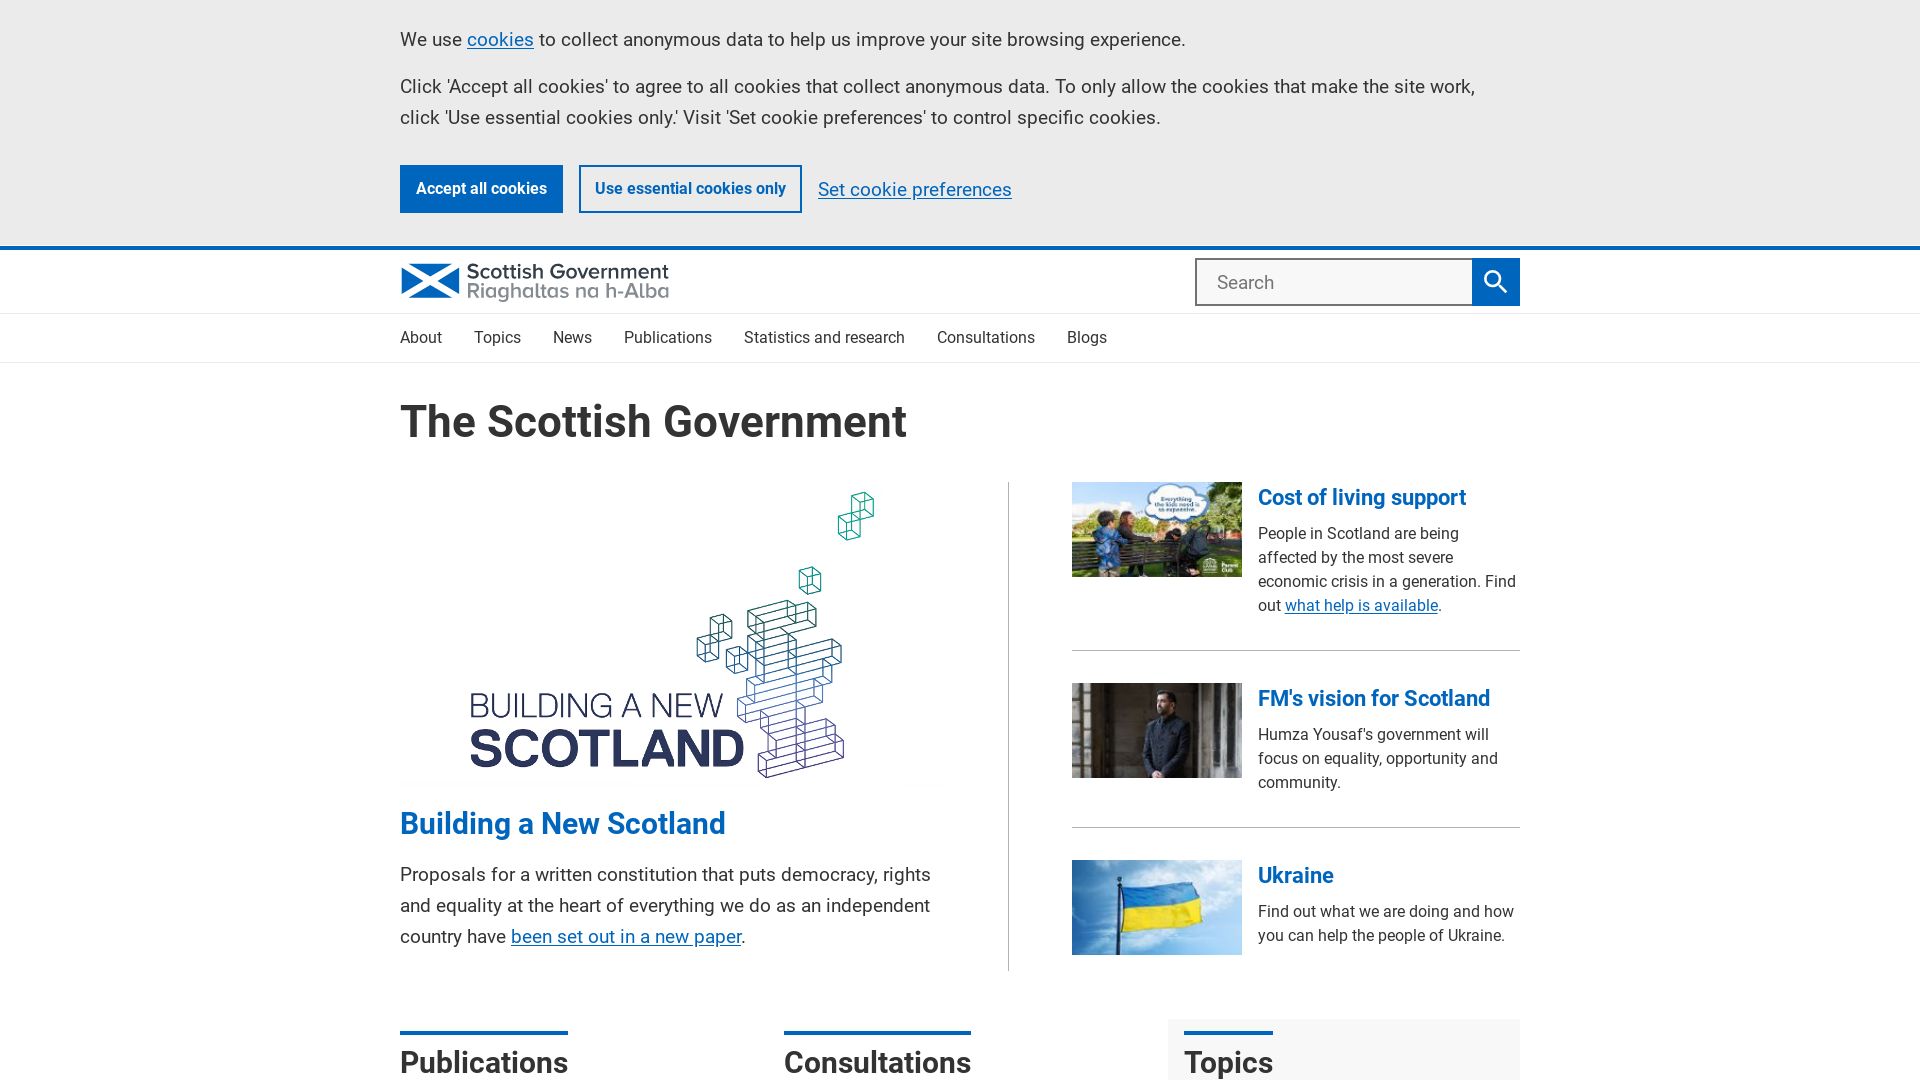 Stato del sito web scotland.gov.uk è   ONLINE